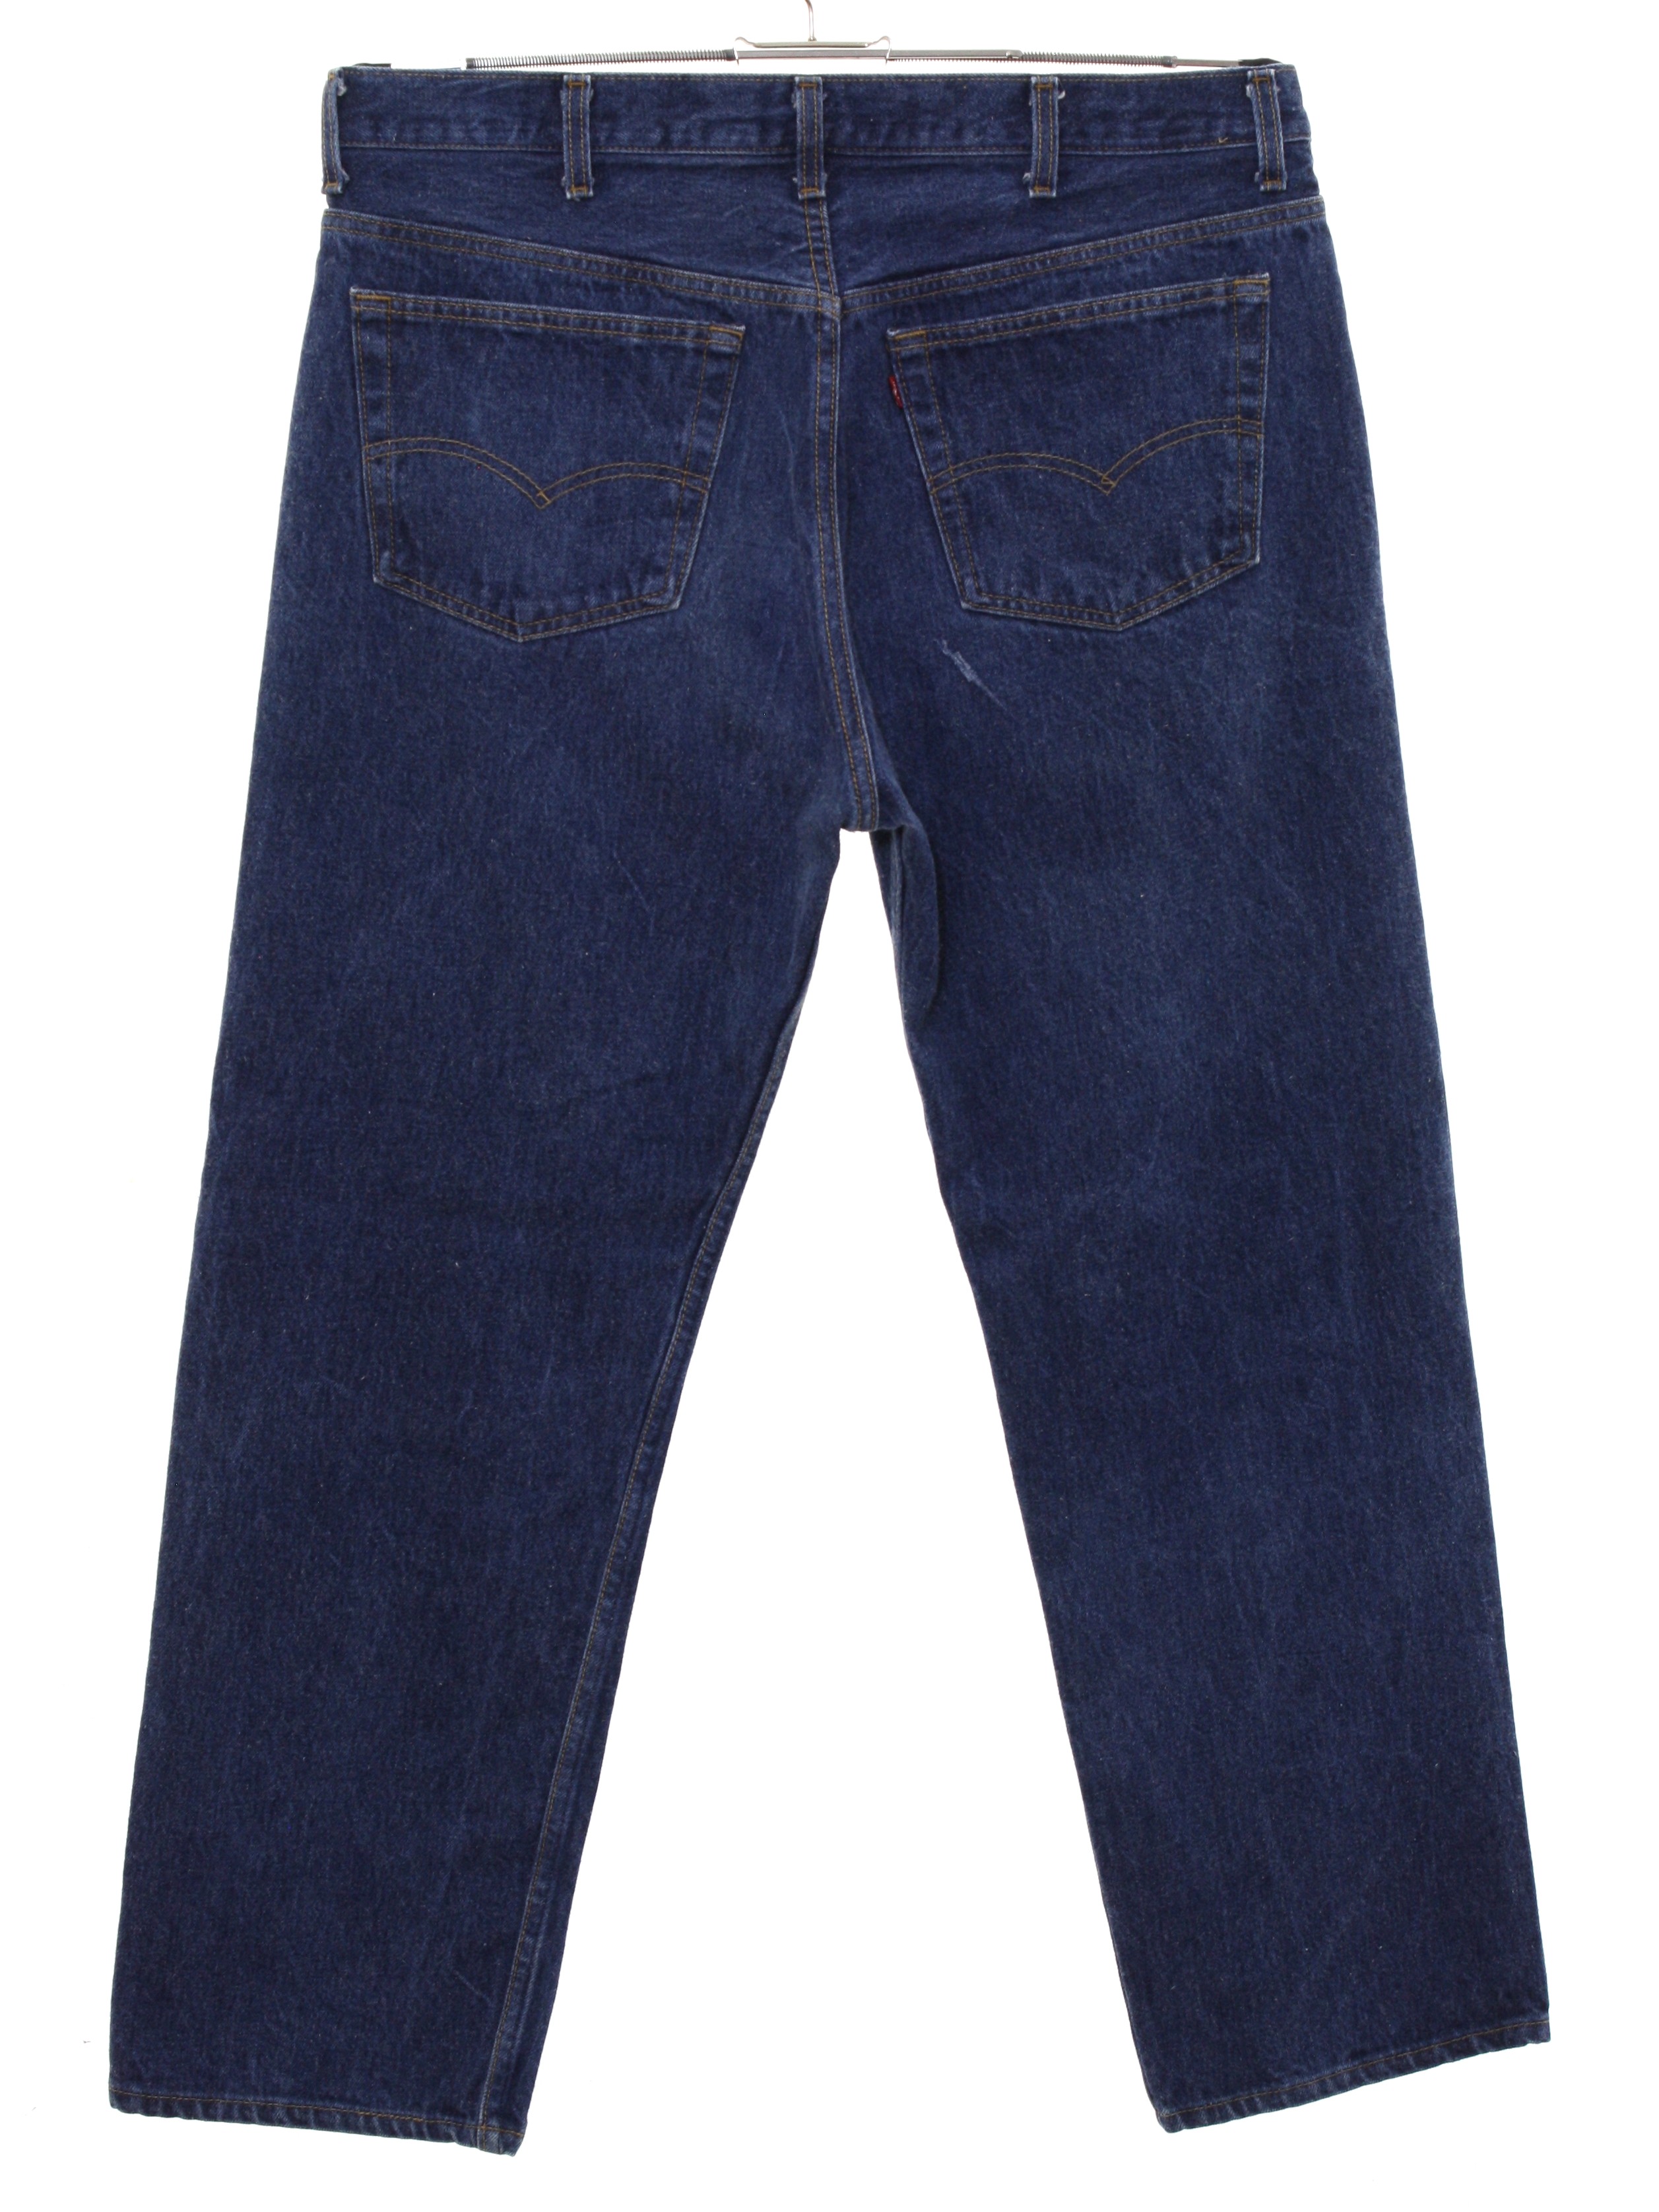 1980s levi jeans